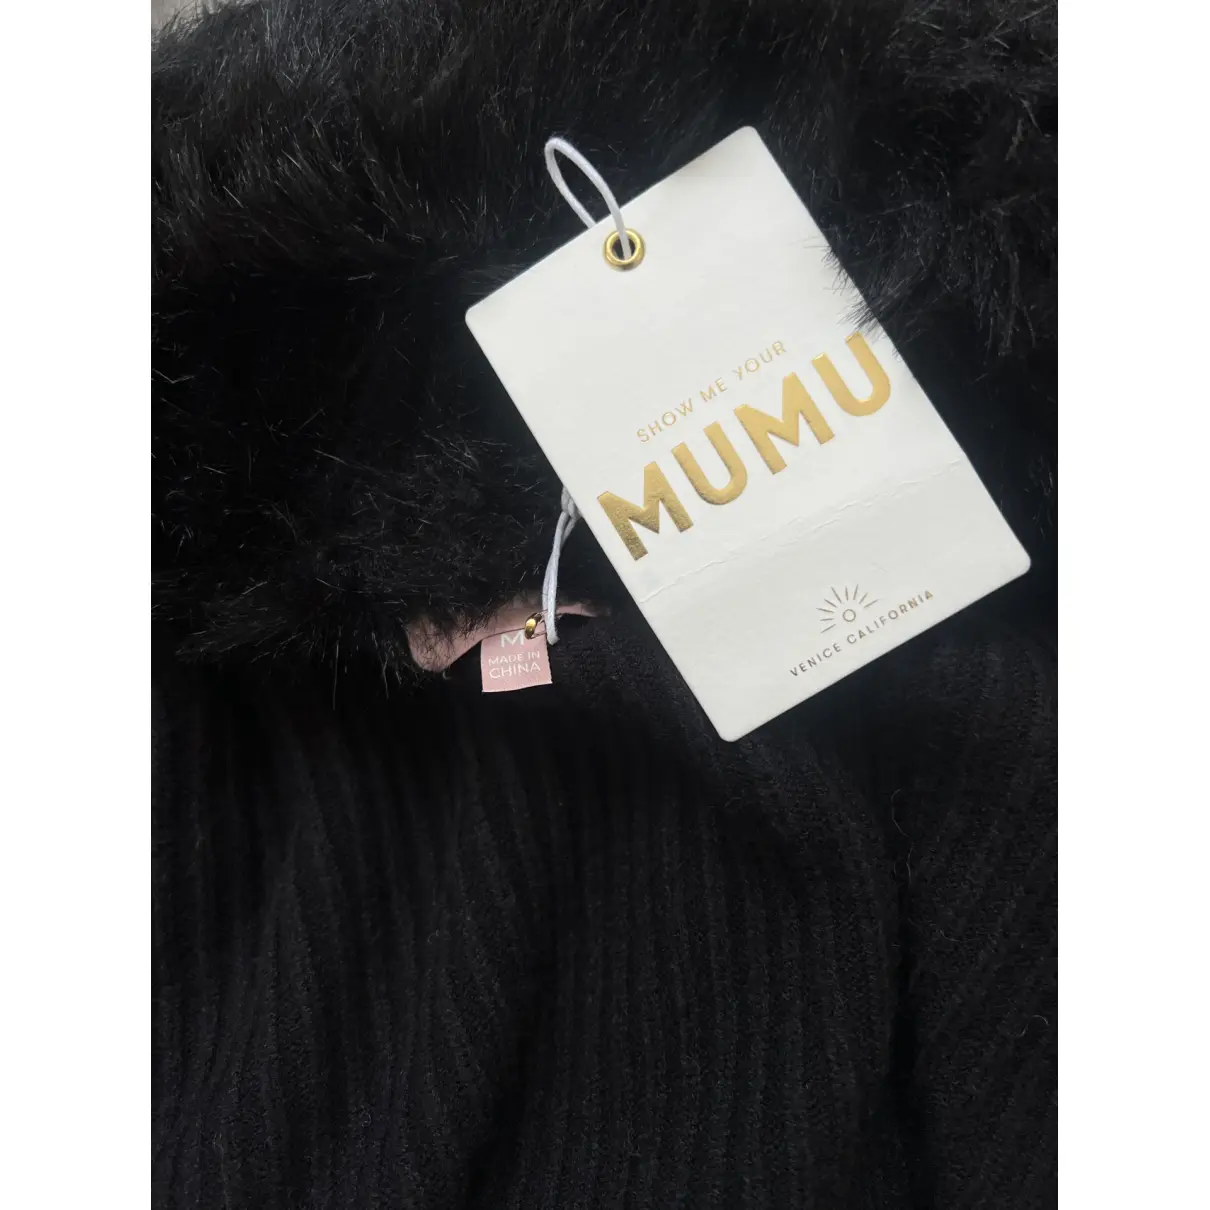 Buy Show me your mumu Coat online